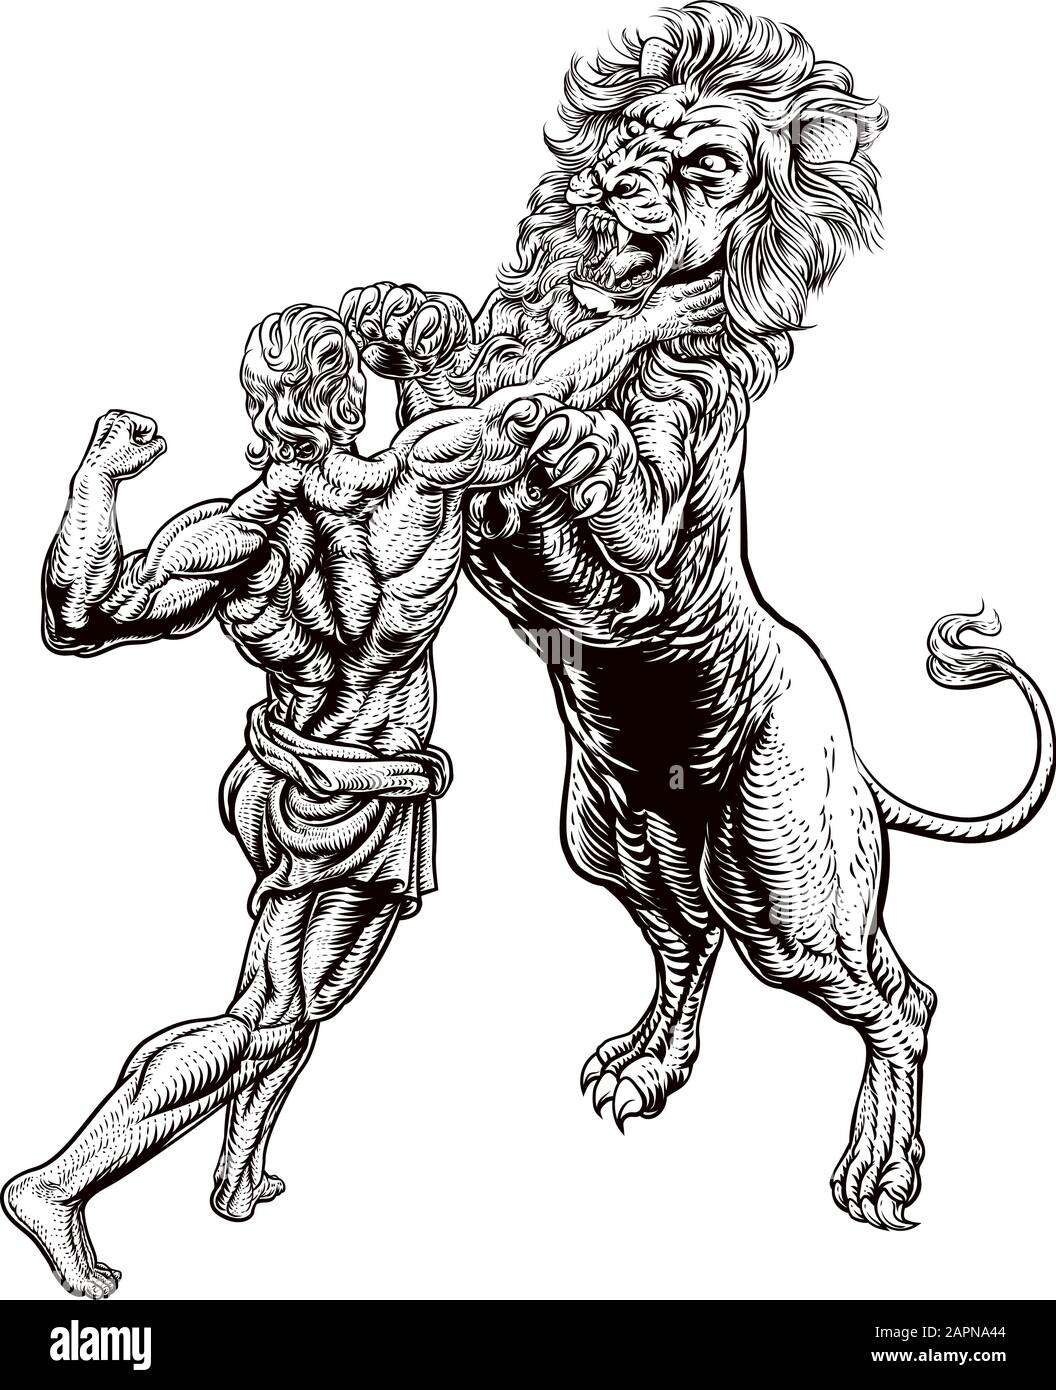 Битва Геракла со львом